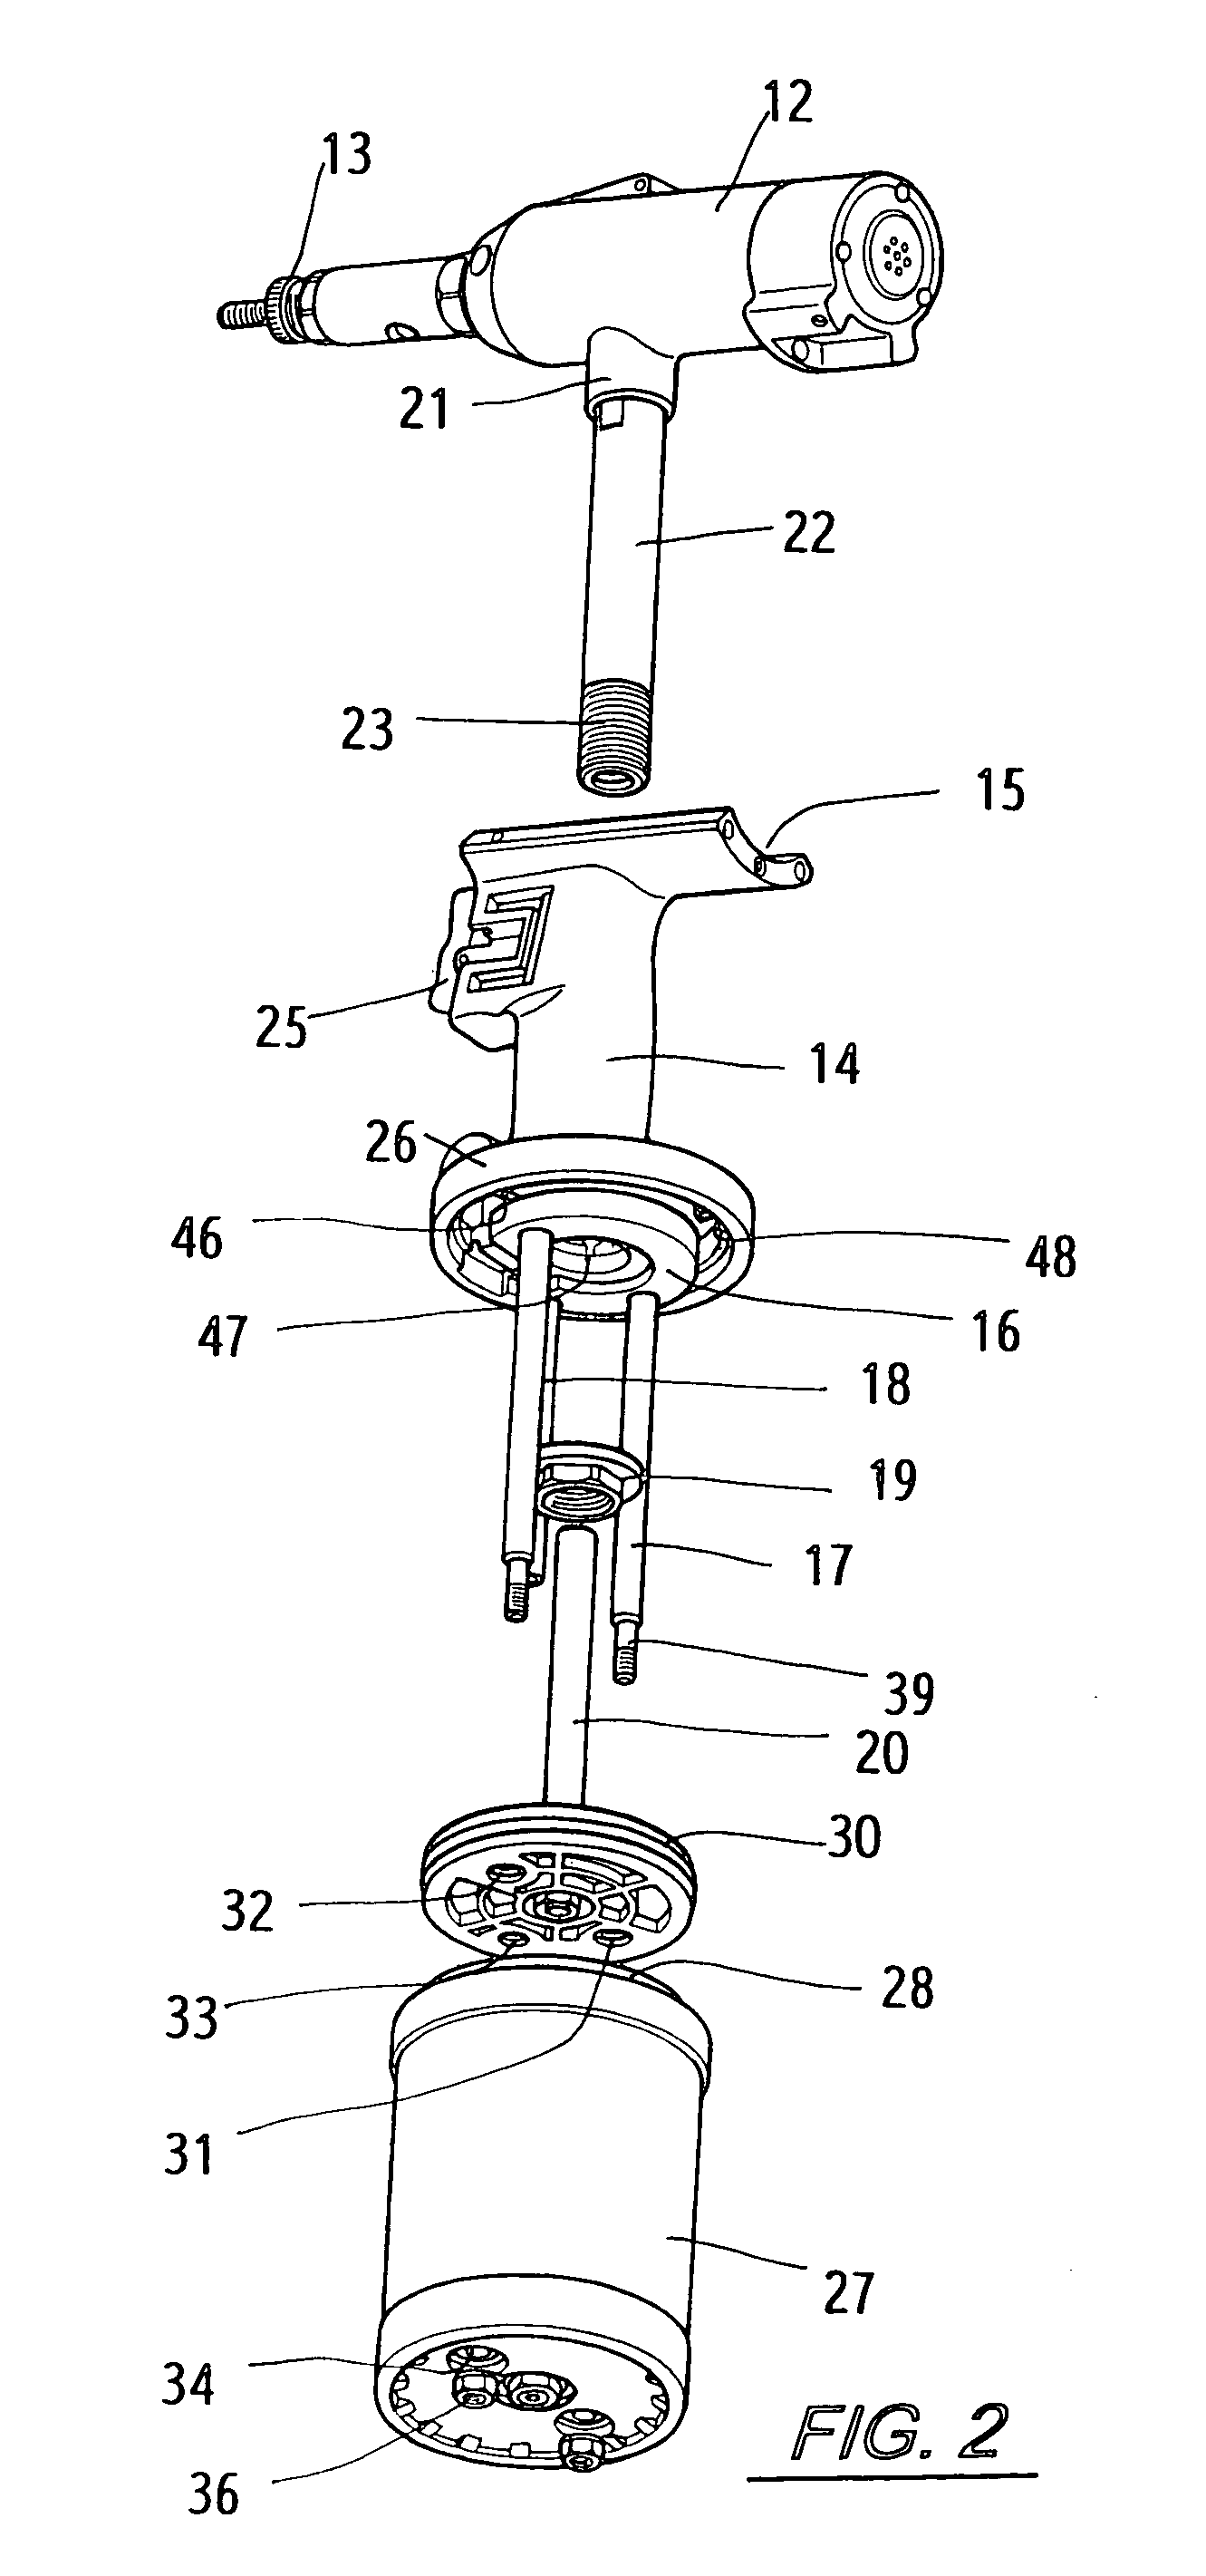 Structure of a rivet nut gun